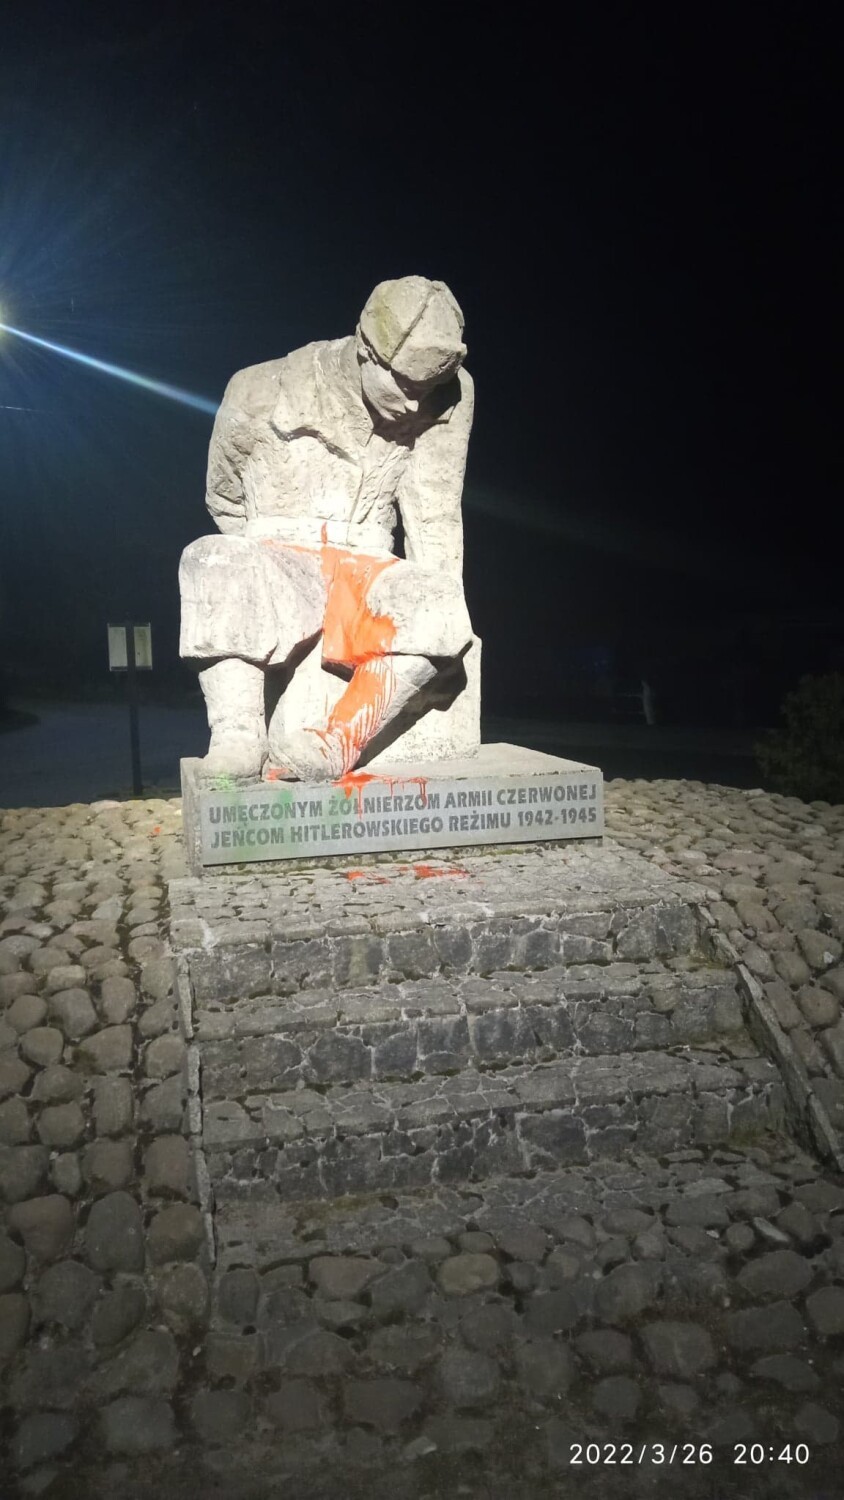 Kto zniszczył pomnik żołnierza Armii Czerwonej w Starzyńskim Dworze? - Akt wandalizmu, nic więcej - komentuje sołtys Waldemar Bradtke | FOTO